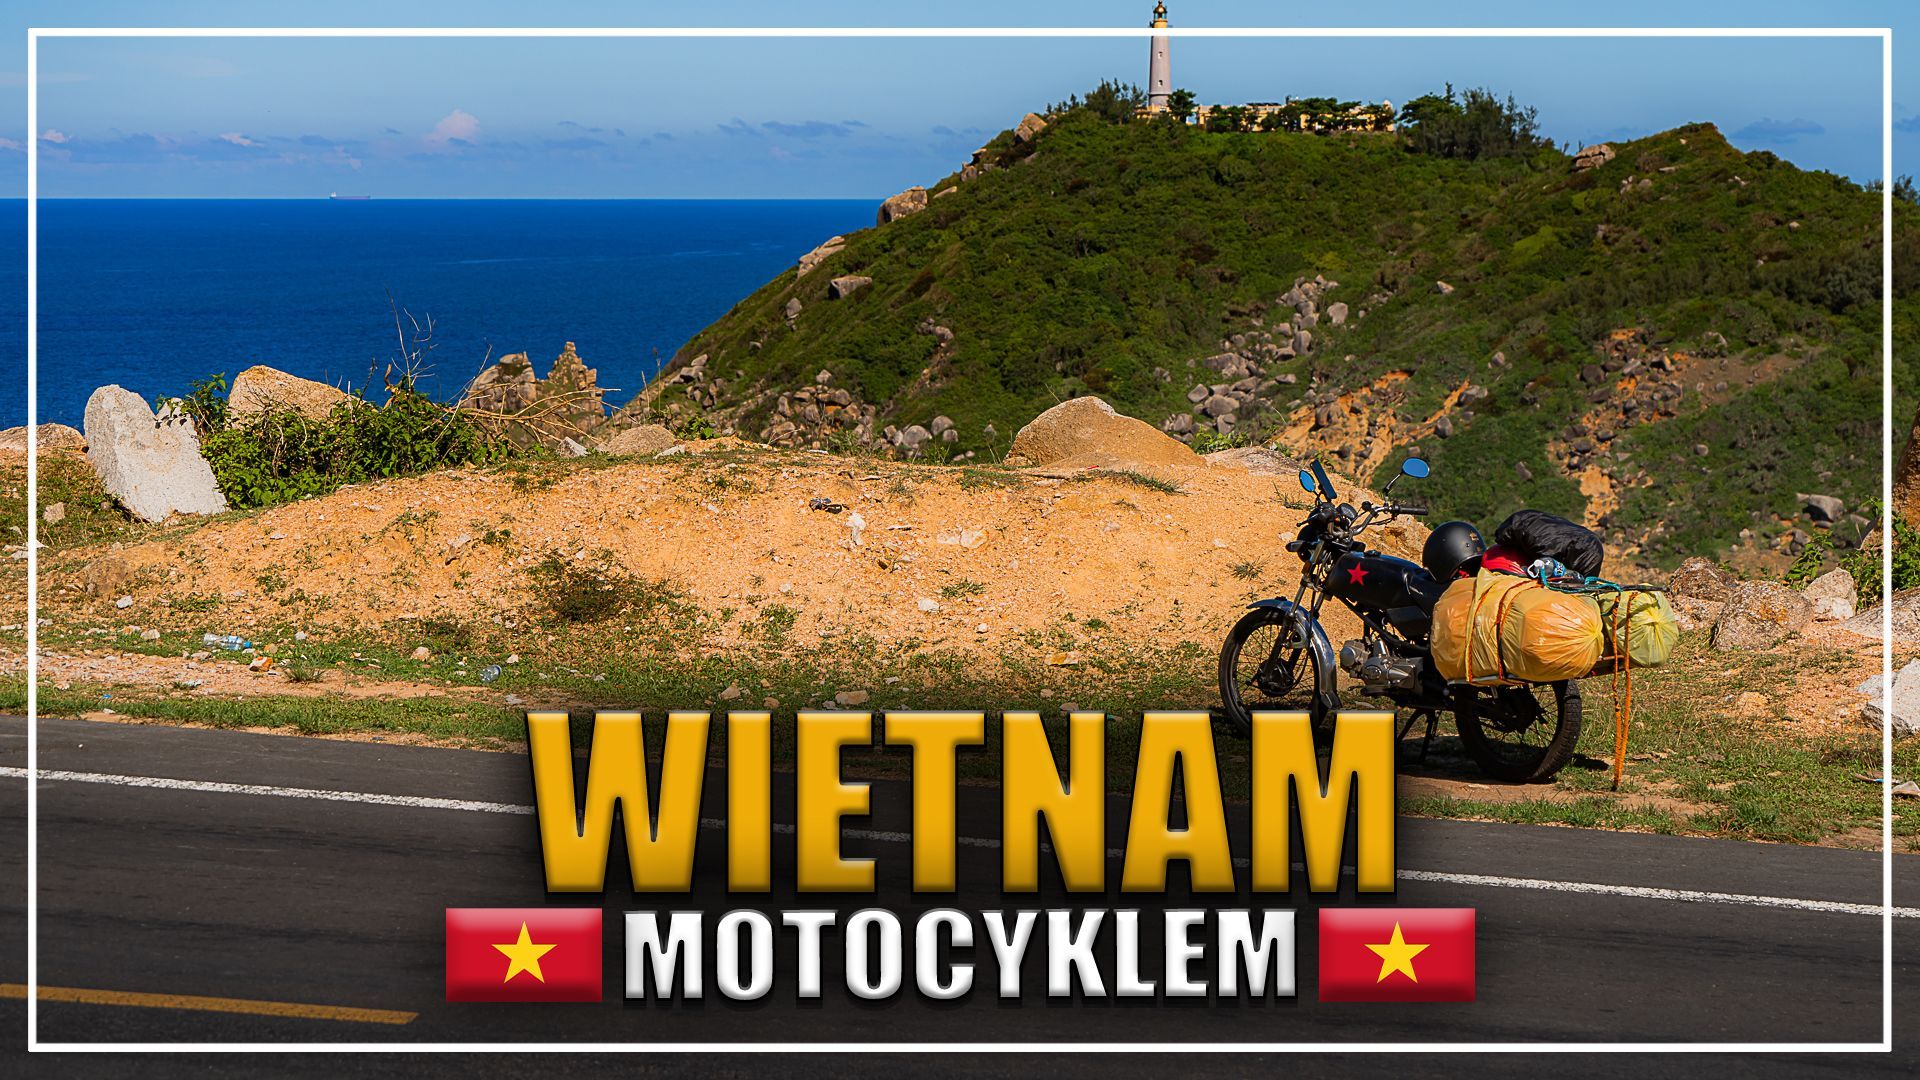 Motocyklem przez Wietnam, czyli nasza trasa z Sajgonu do Da Nang